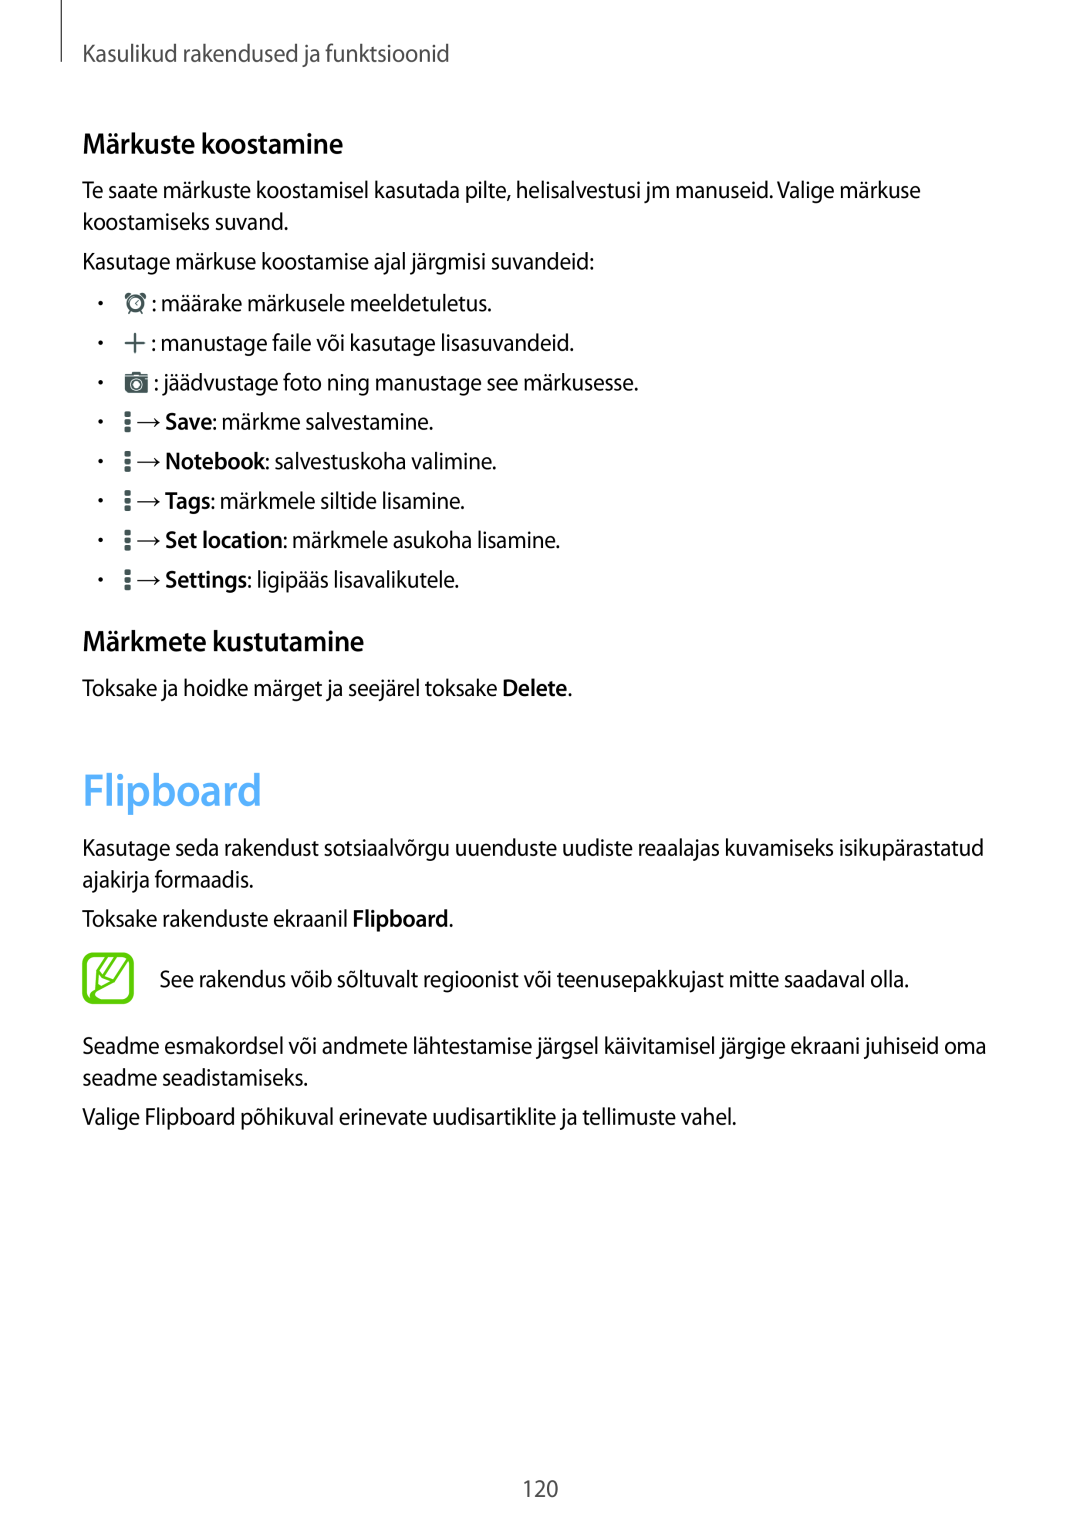 Samsung SM-T700NZWASEB manual Flipboard, Märkuste koostamine, Märkmete kustutamine, Kasulikud rakendused ja funktsioonid 